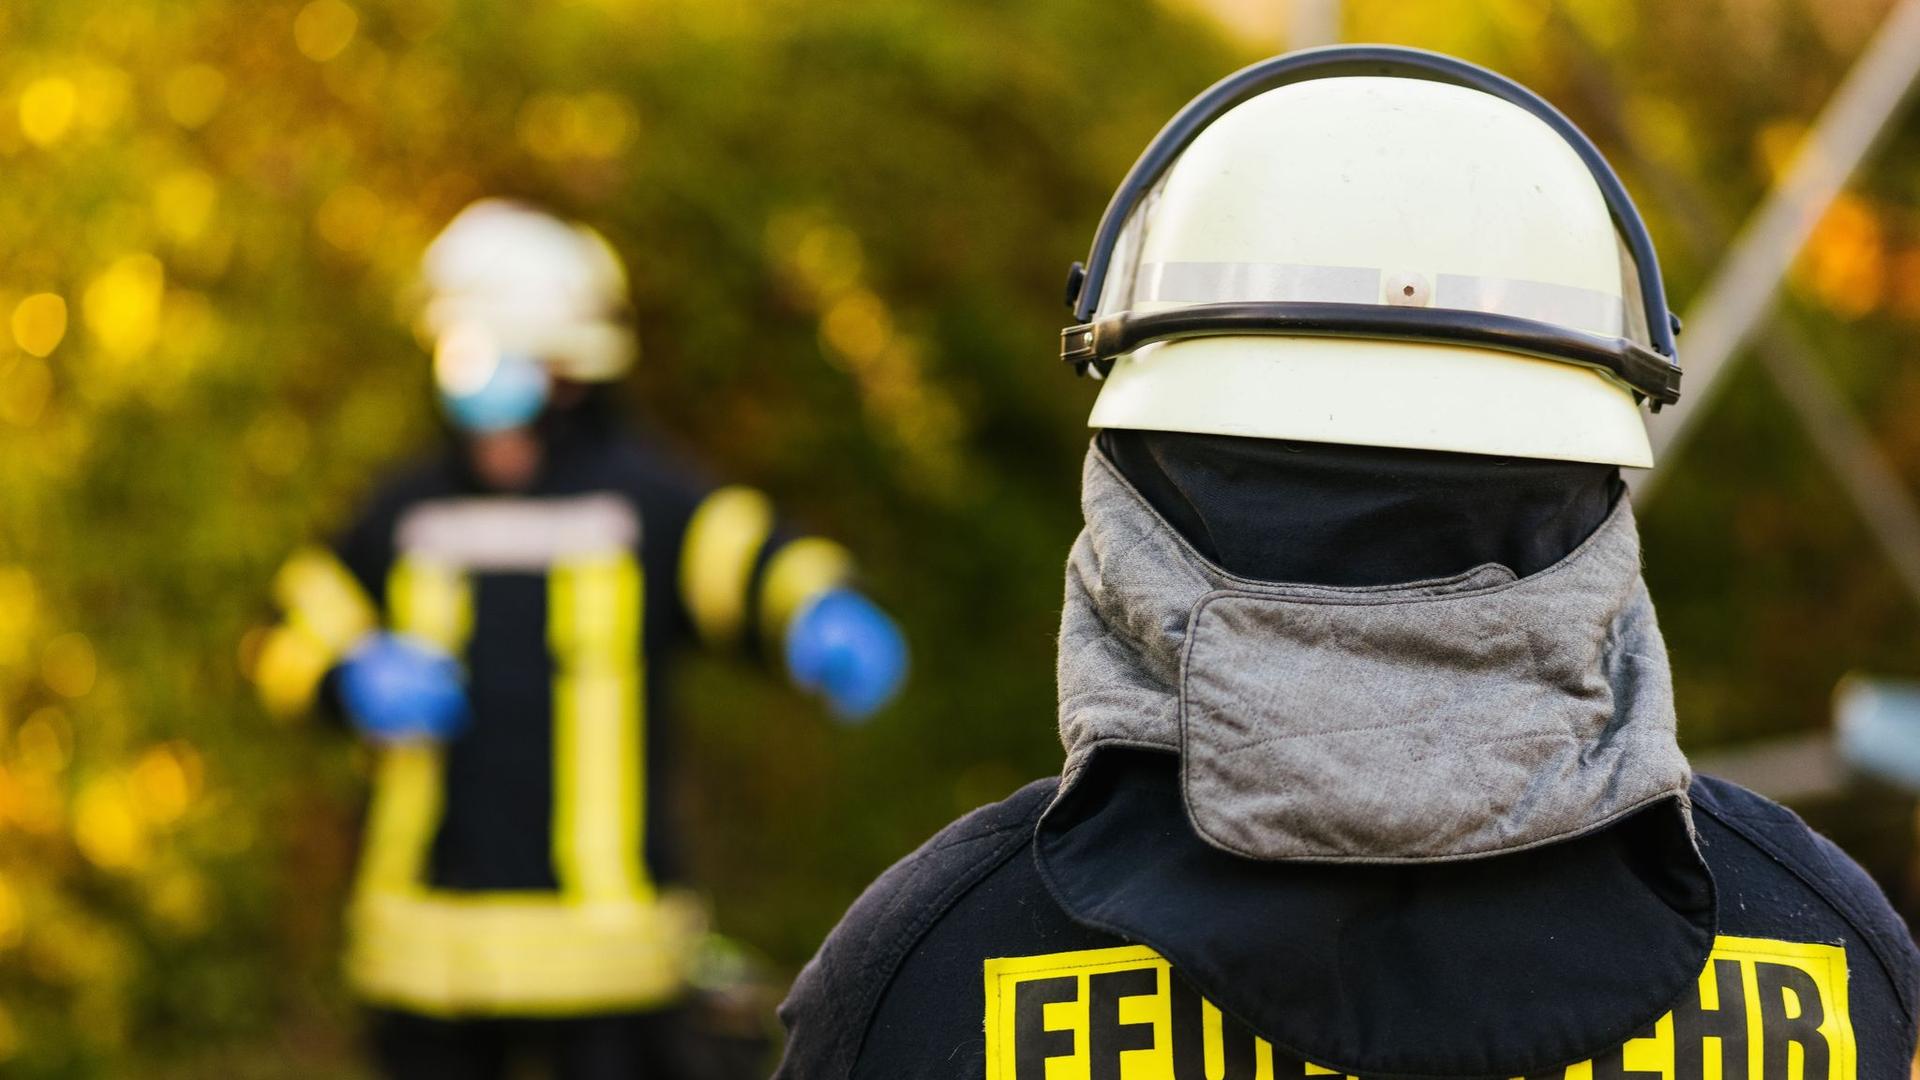 Unterfranken: Drei Verletzte nach Brand in Einfamilienhaus in Kitzingen